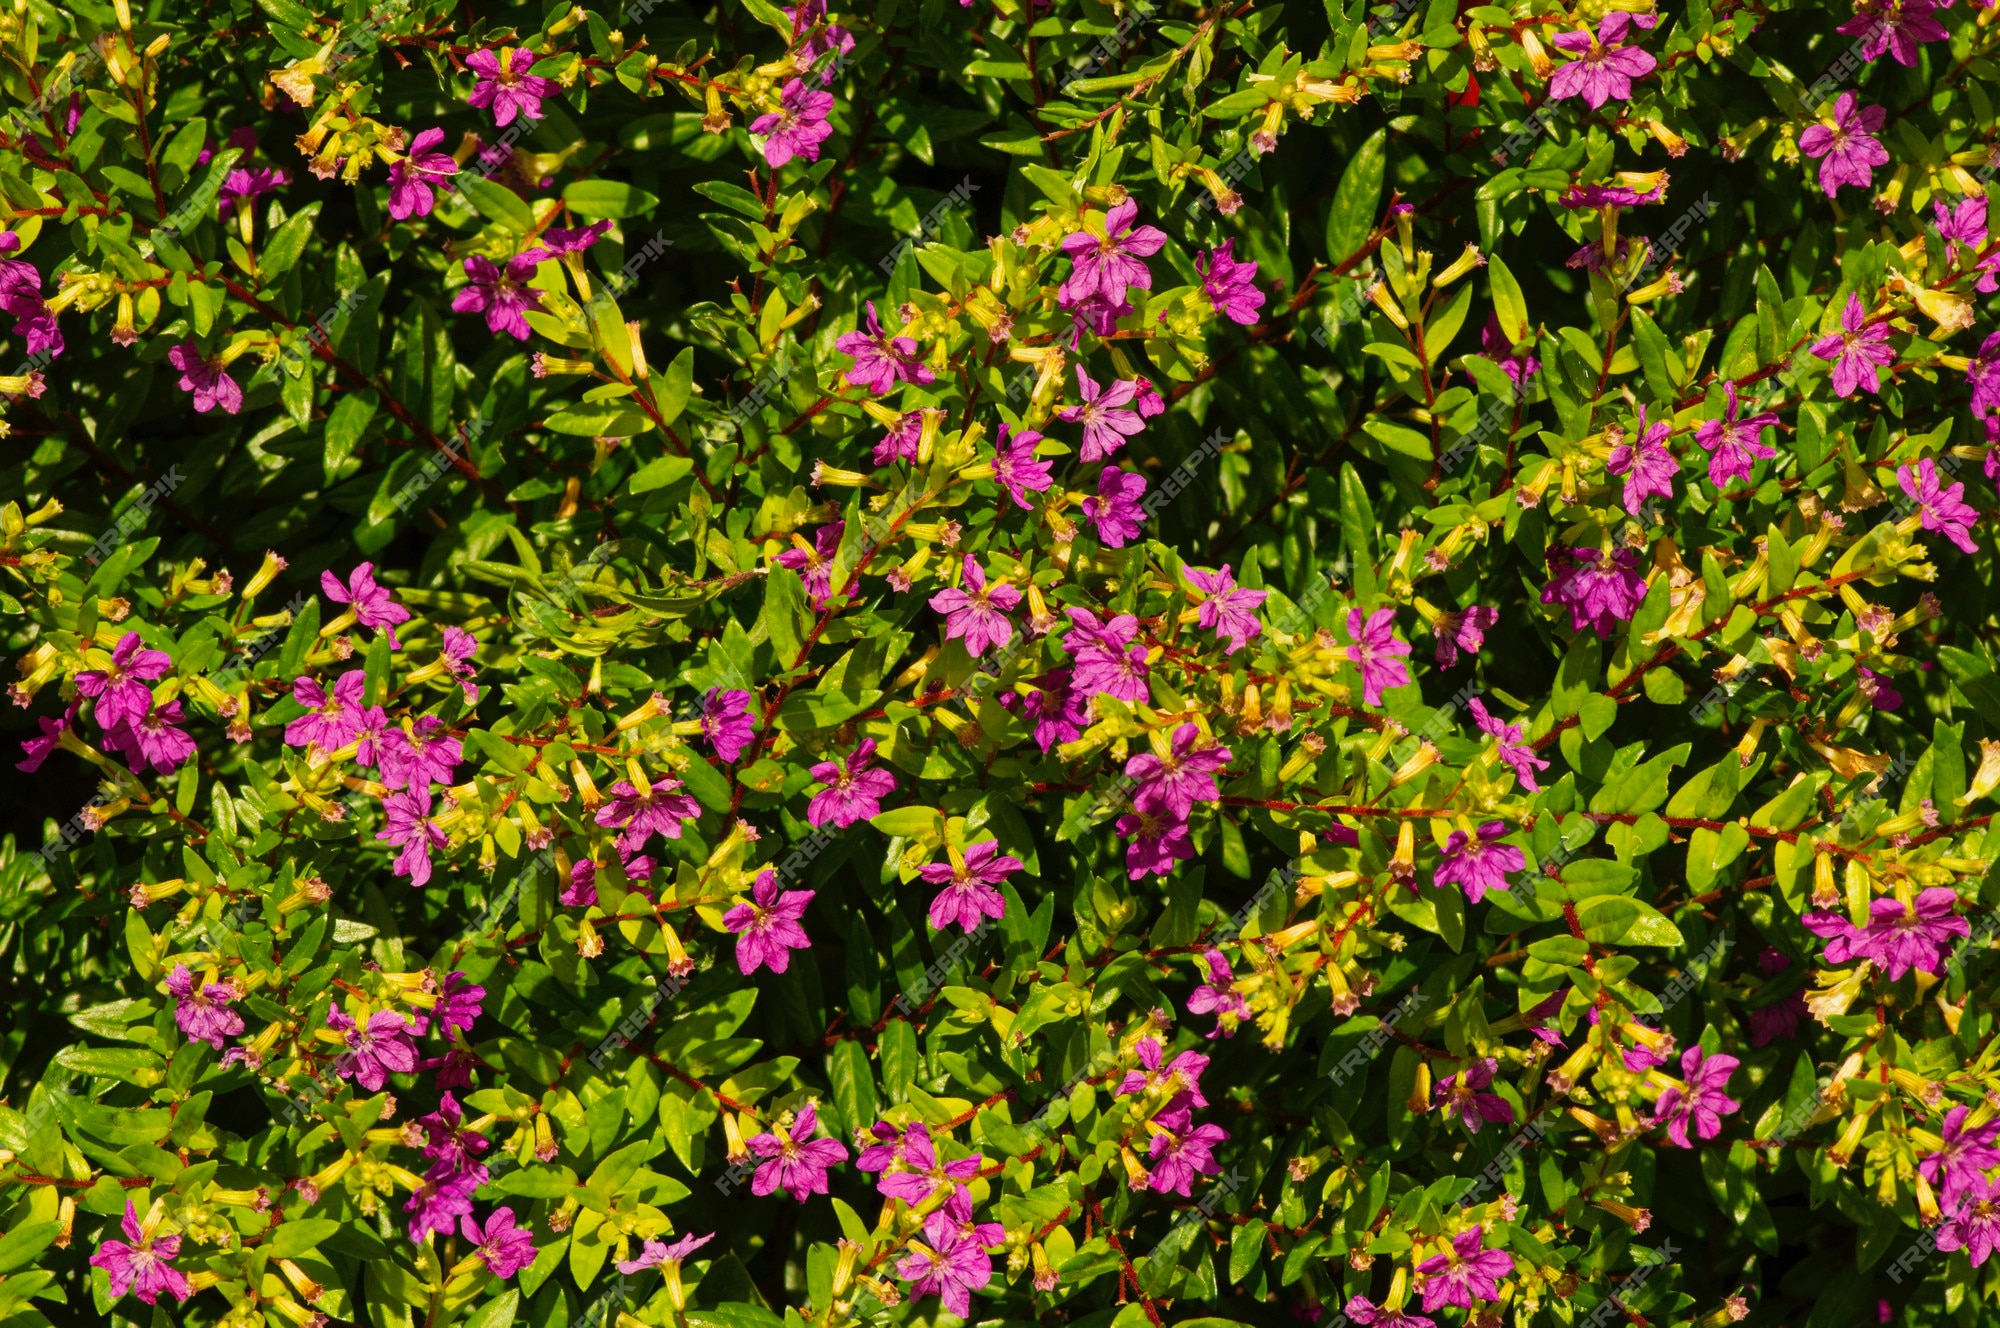 Arbusto com pequenas folhas verdes e flores roxas para plantas ornamentais  | Foto Premium